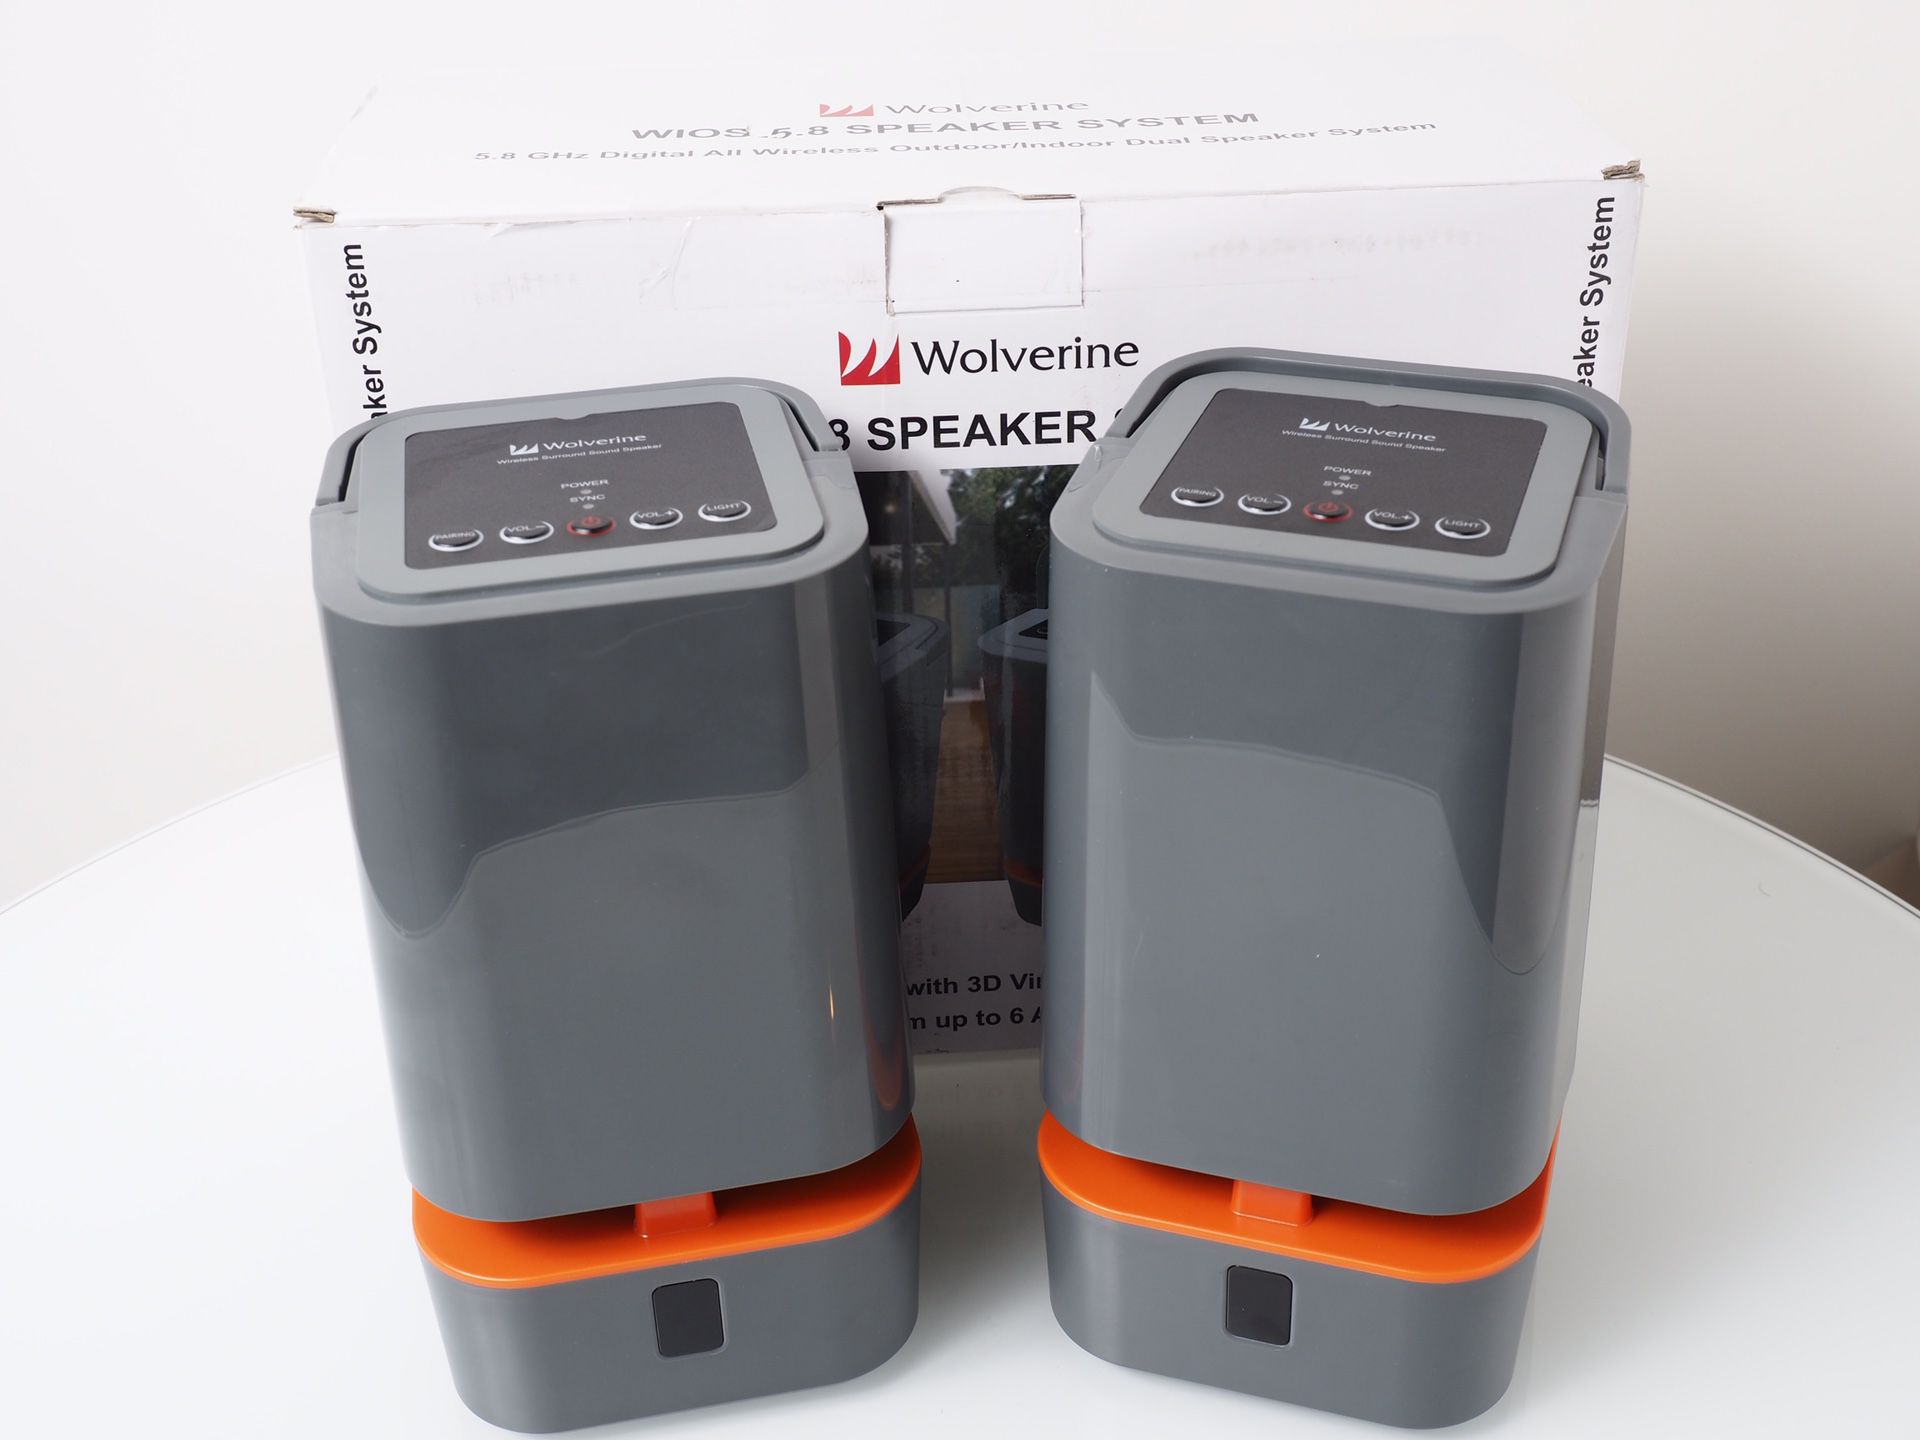 Wolverine WIOS 5.8GHz Wireless Speaker System